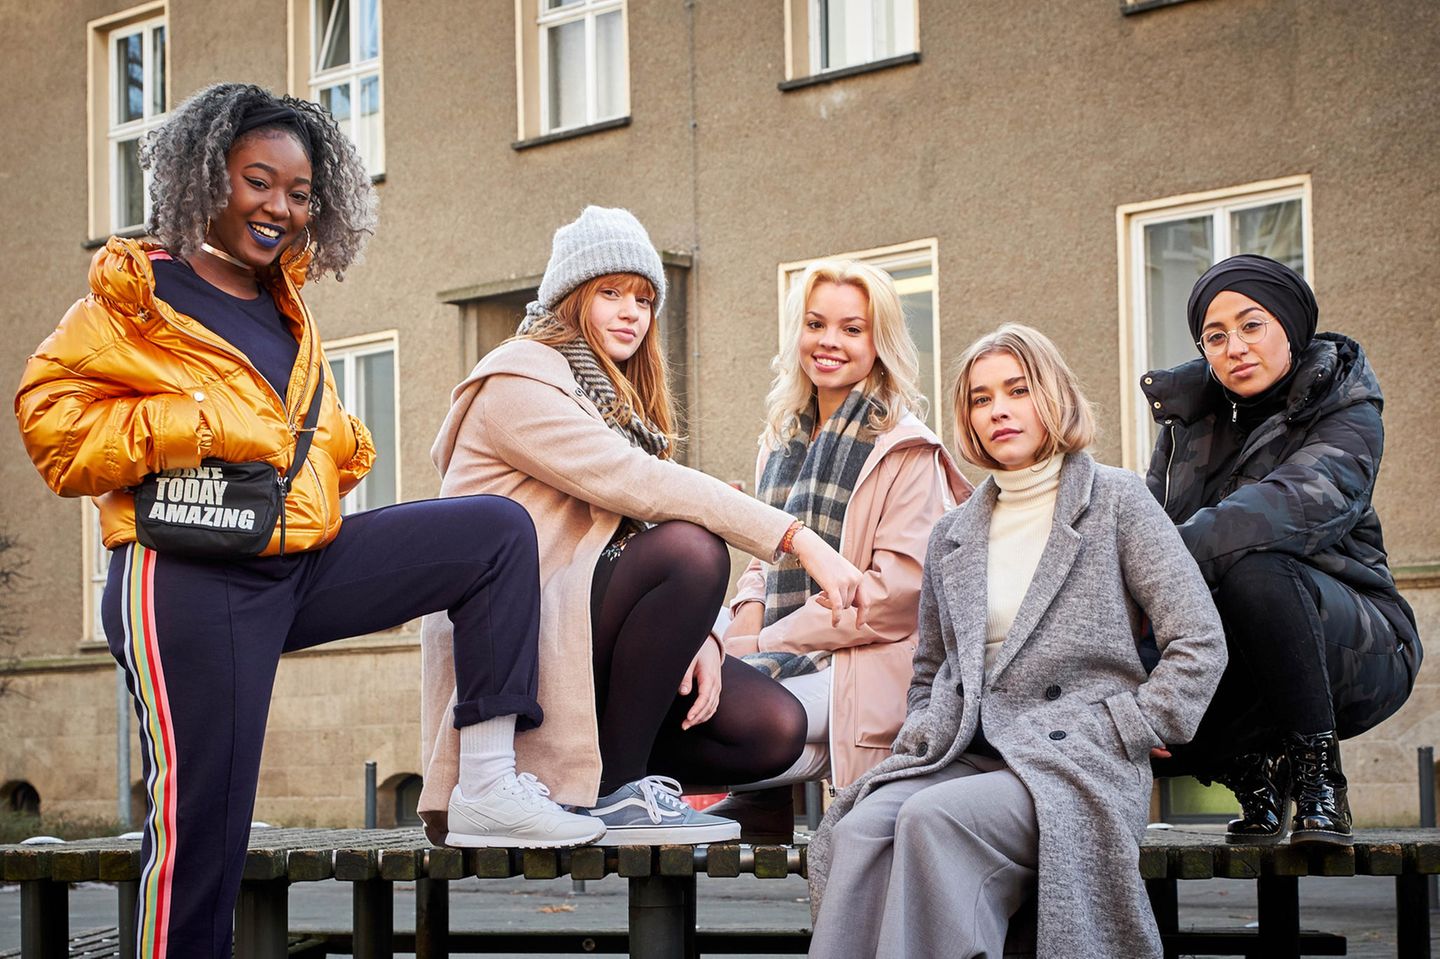 Freundschaft, Liebe und die Suche nach der eigenen Identität - in der Webserie "DRUCK" stellen sich fünf junge Frauen den Herausforderungen des Erwachsenwerdens